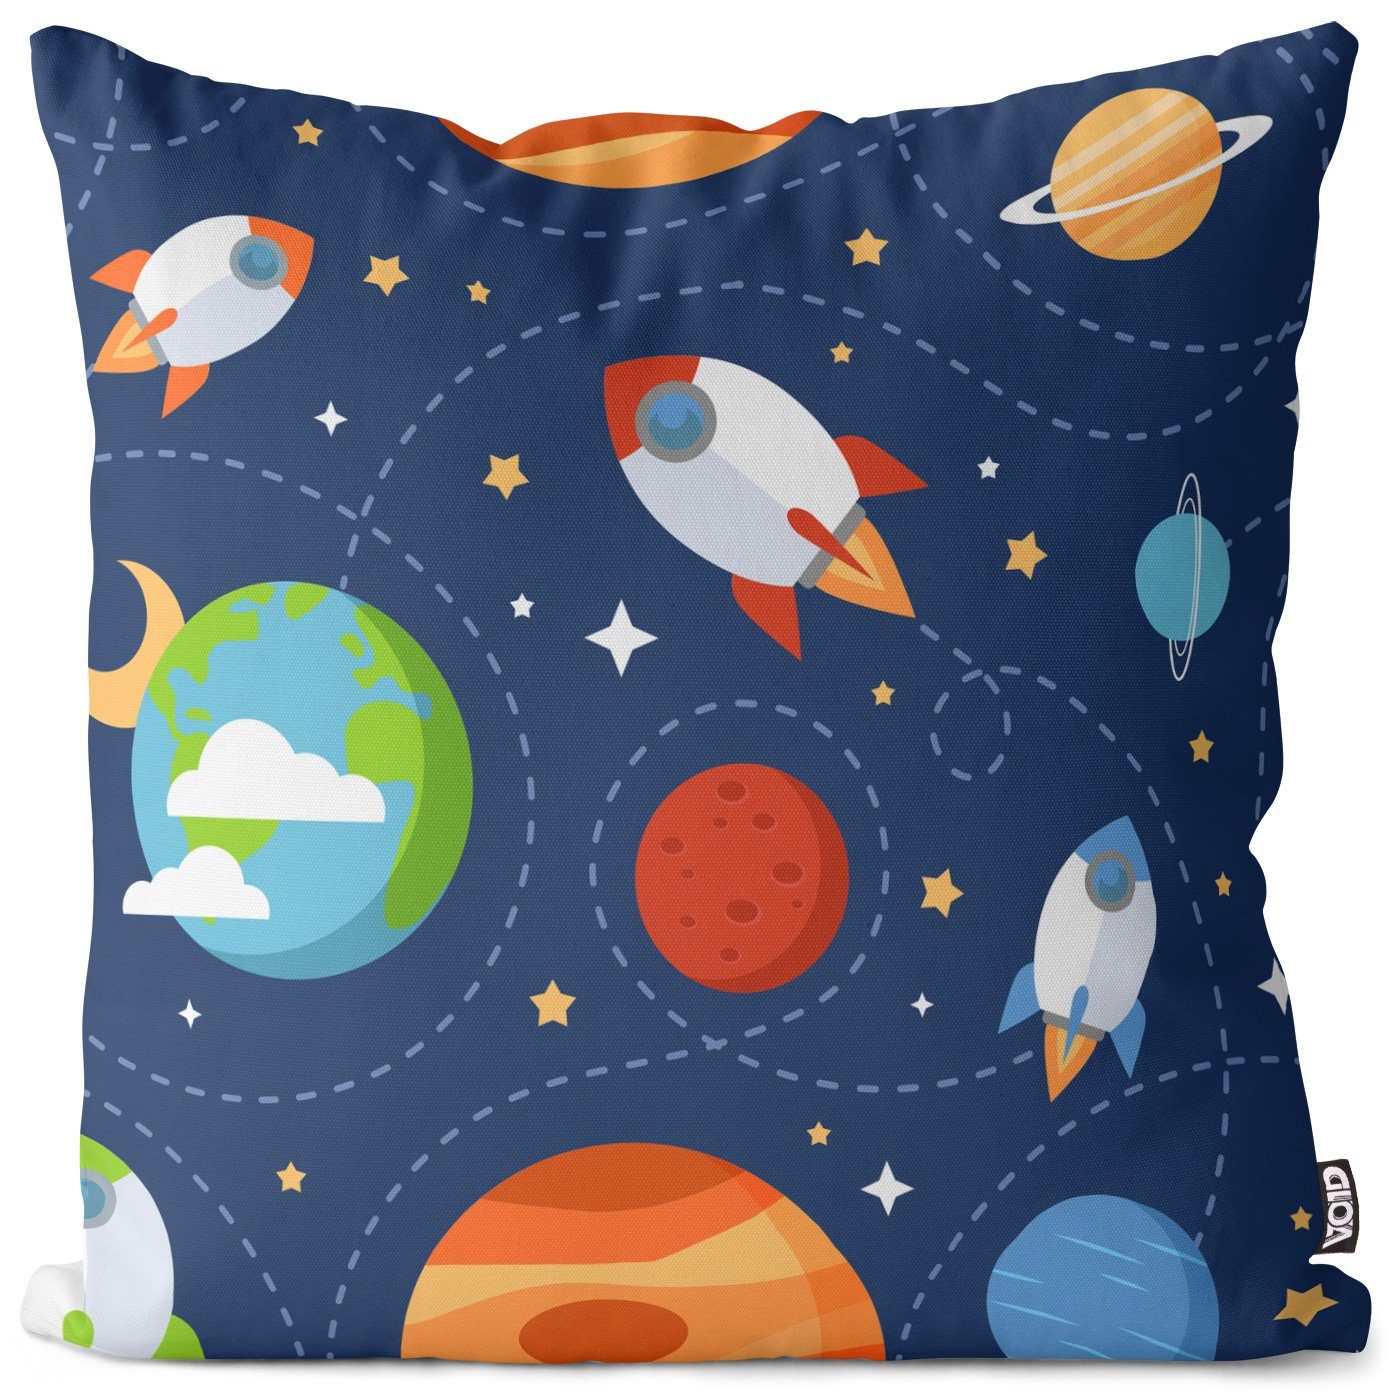 Kissenbezug, VOID (1 Stück), Sofa-Kissen Astronaut Weltraum Space Sterne All Kinder Kinderzimmer Jungen Spielzeug Rakete Raumfahrt Himmel